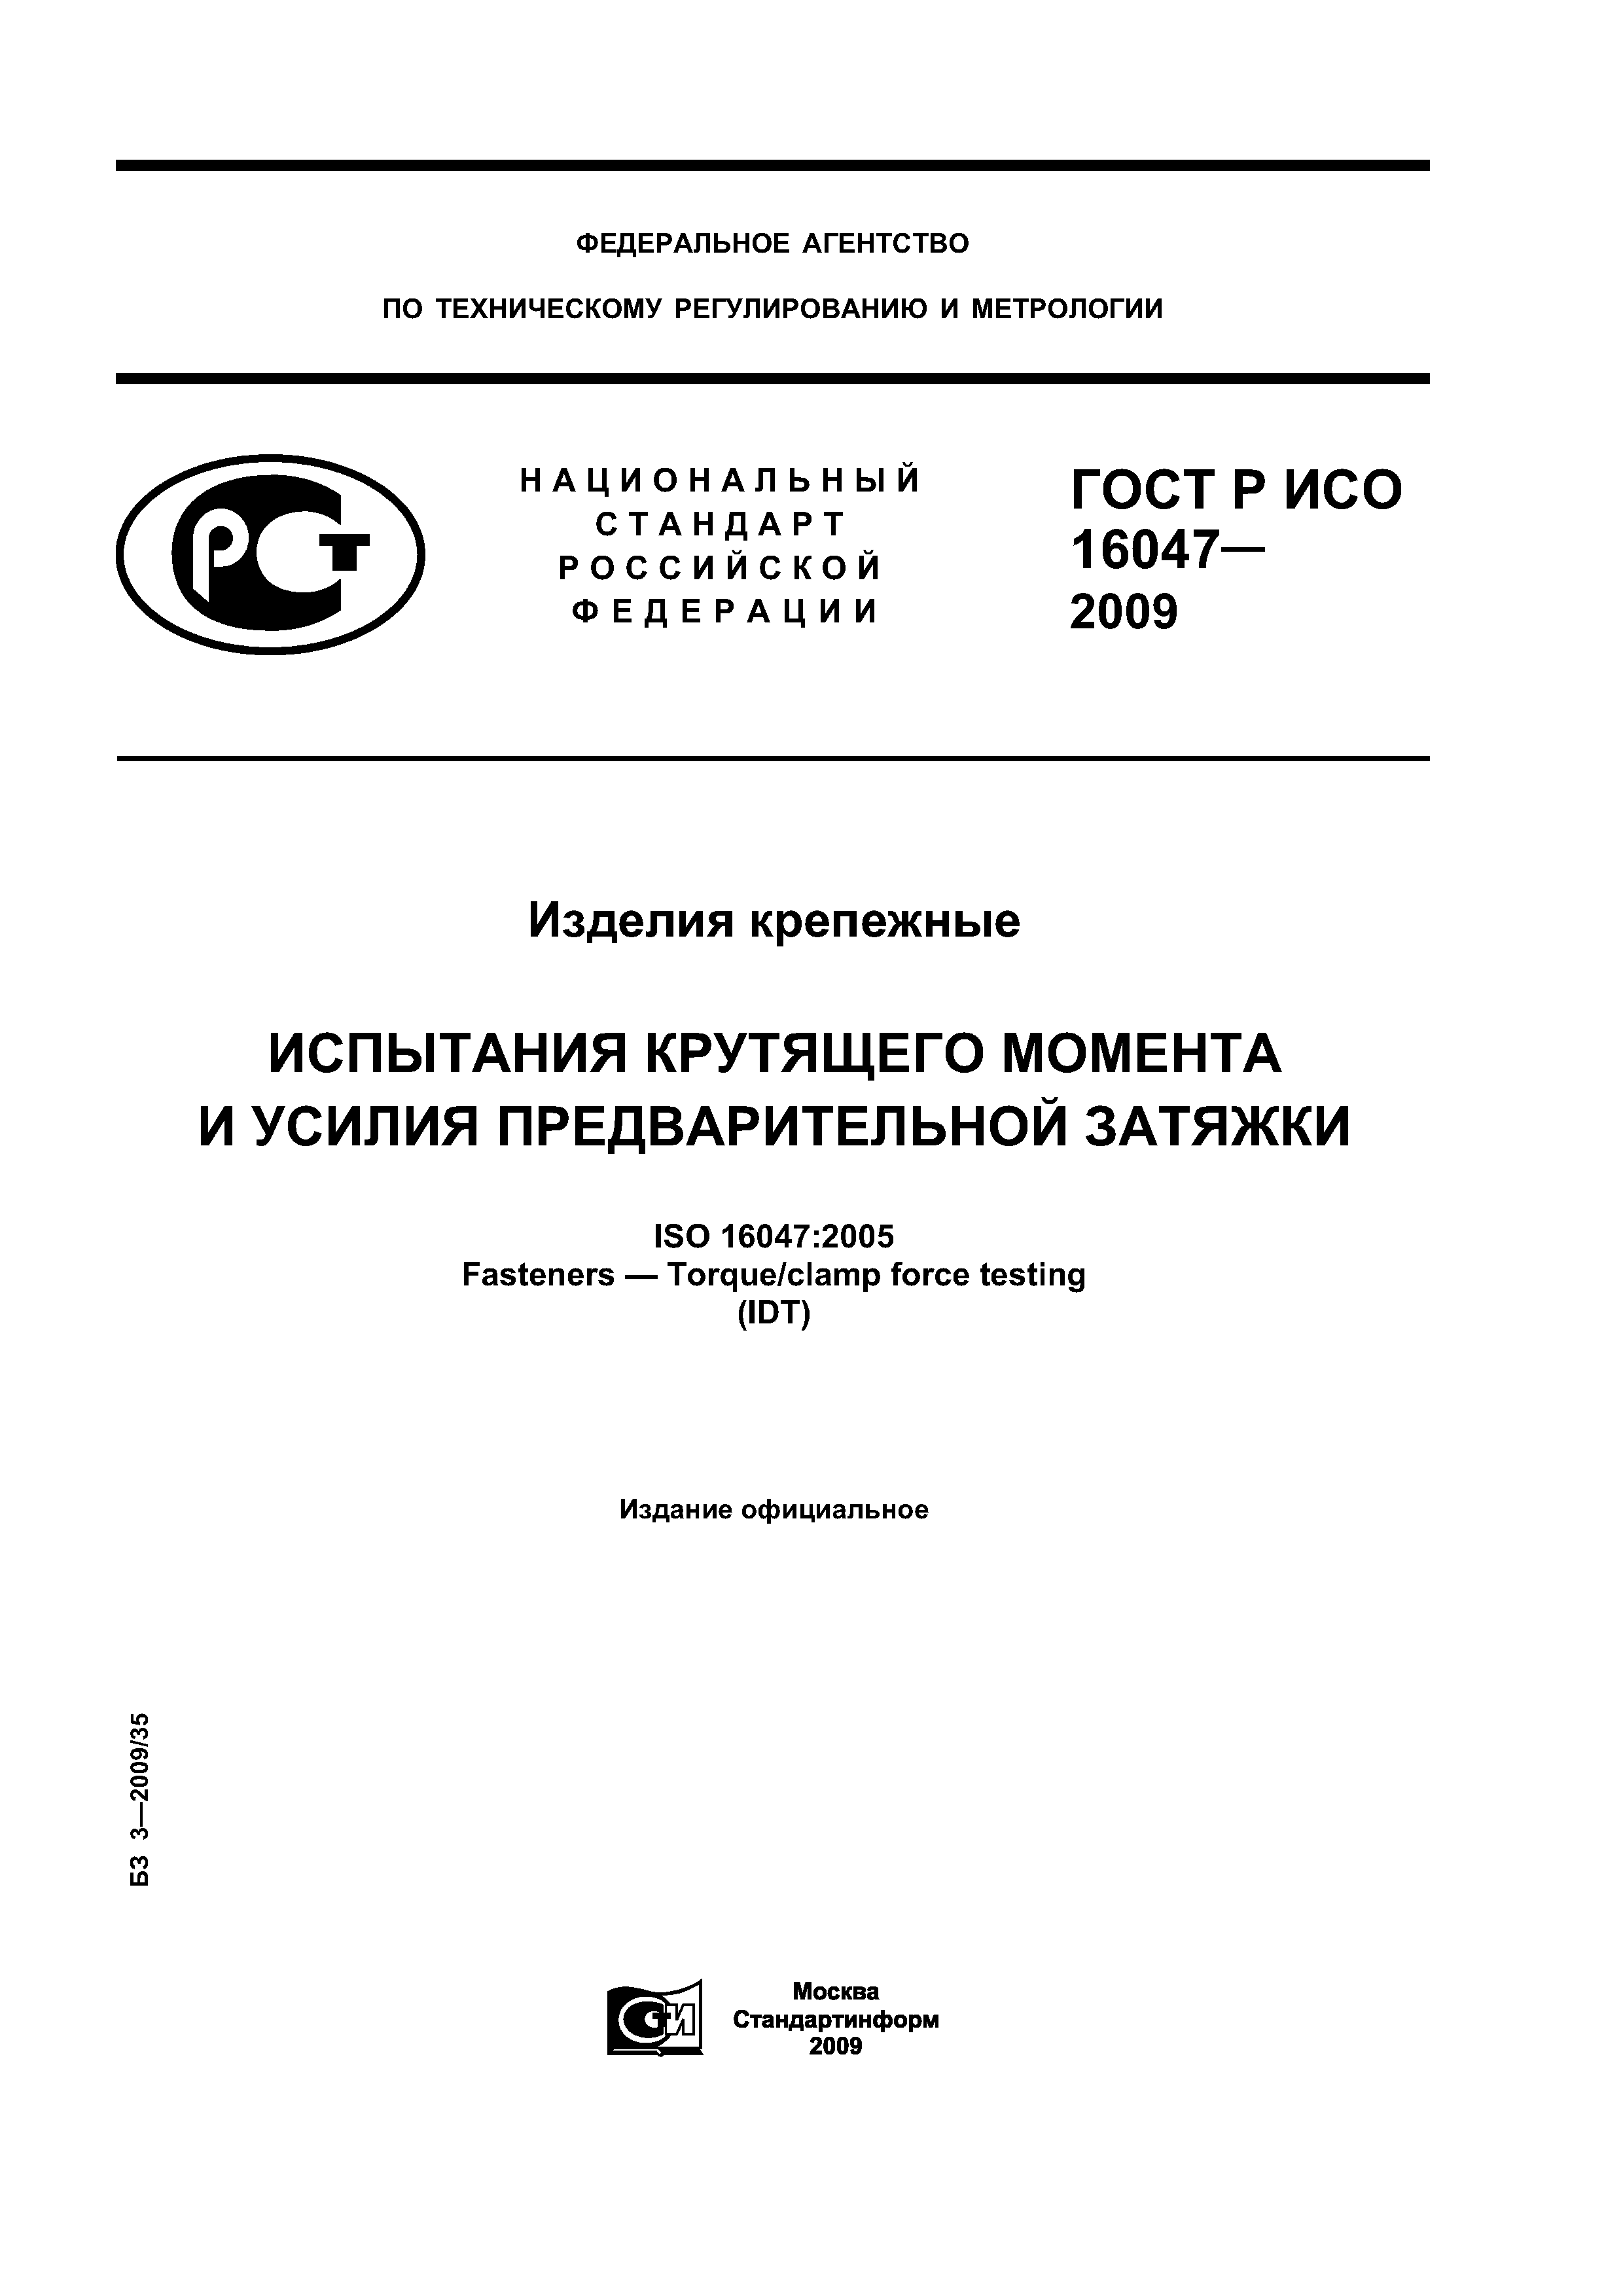 ГОСТ Р ИСО 16047-2009